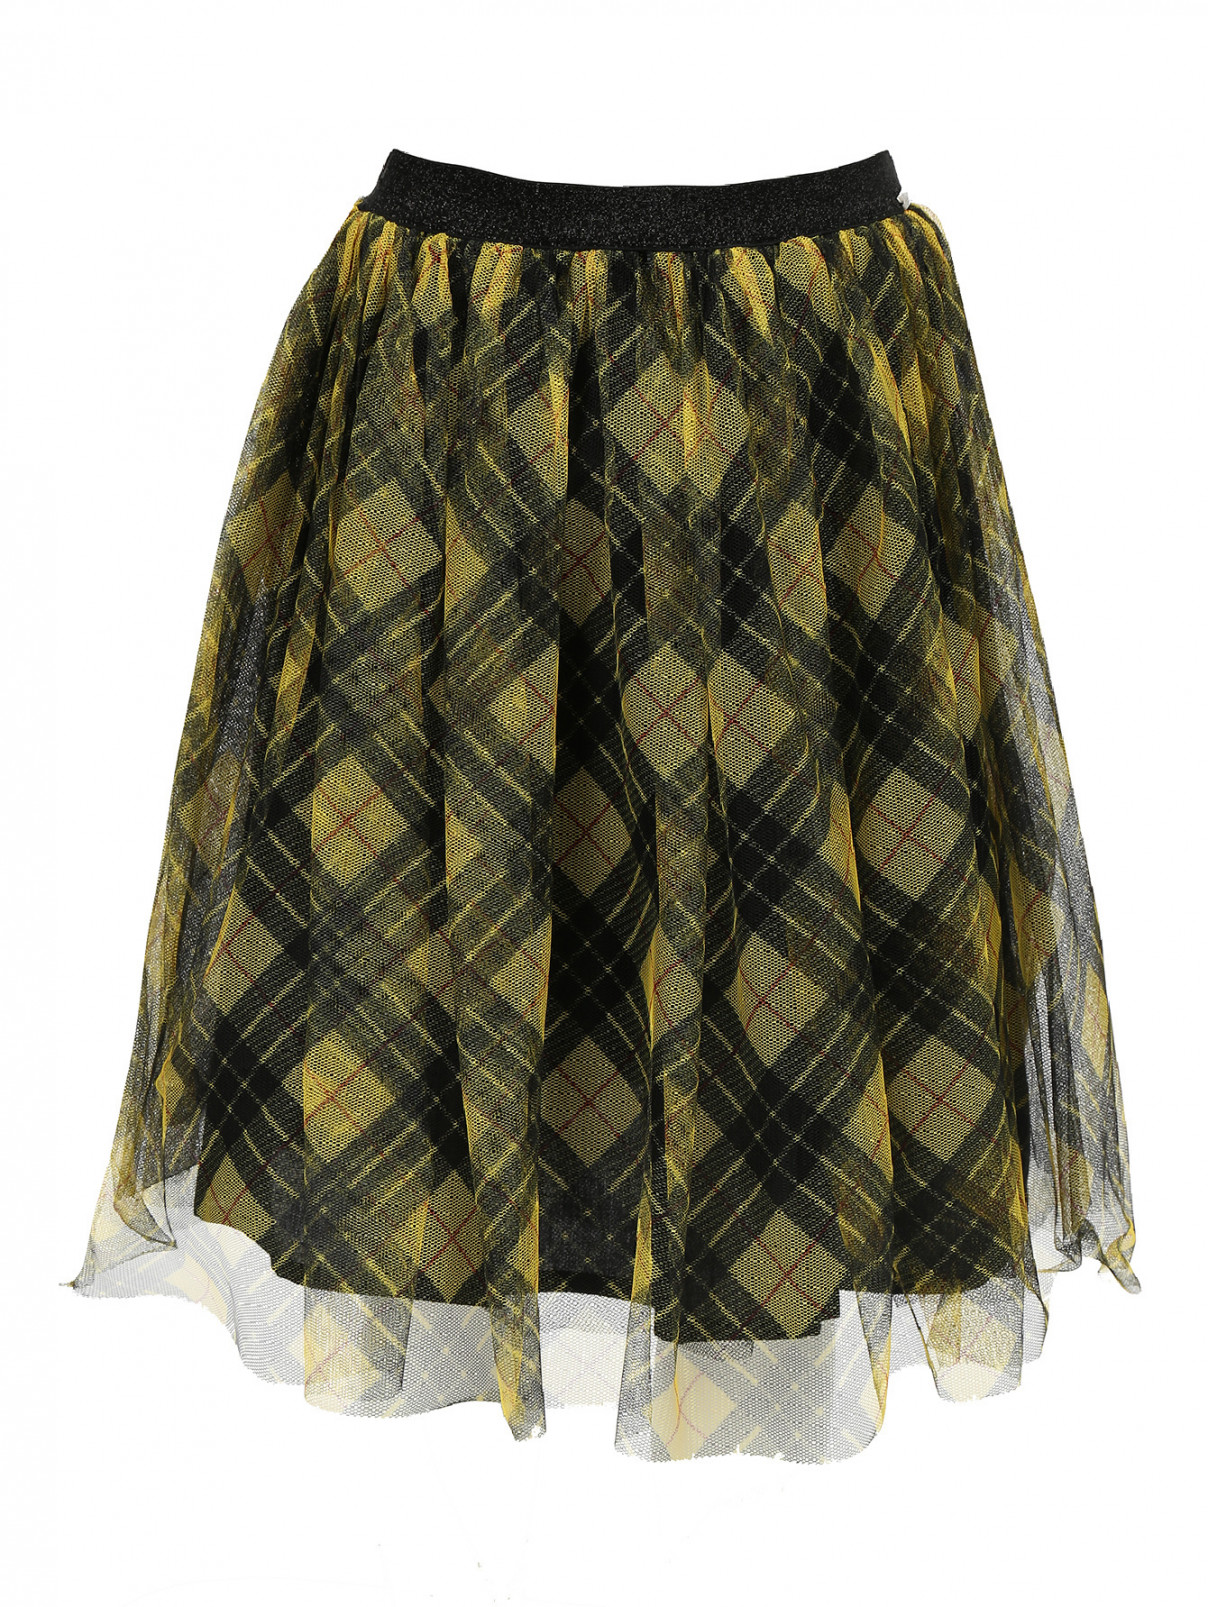 Пышная юбка из хлопка с узором "клетка" Gaultier Junior  –  Общий вид  – Цвет:  Желтый